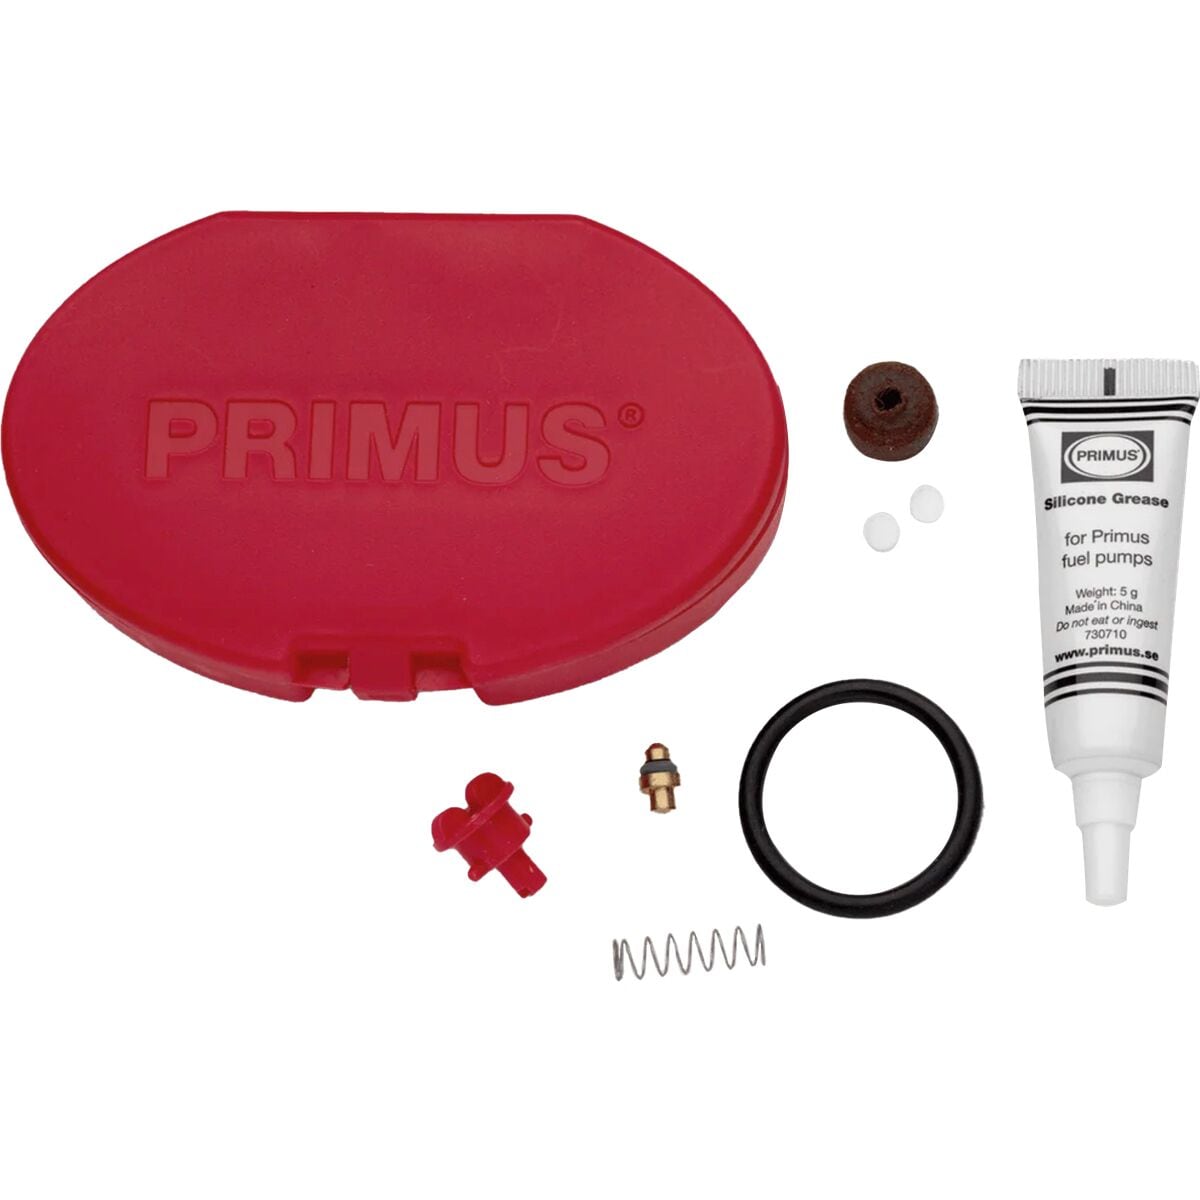 Primus ErgoPump Fuel Pump Maintenance Kit